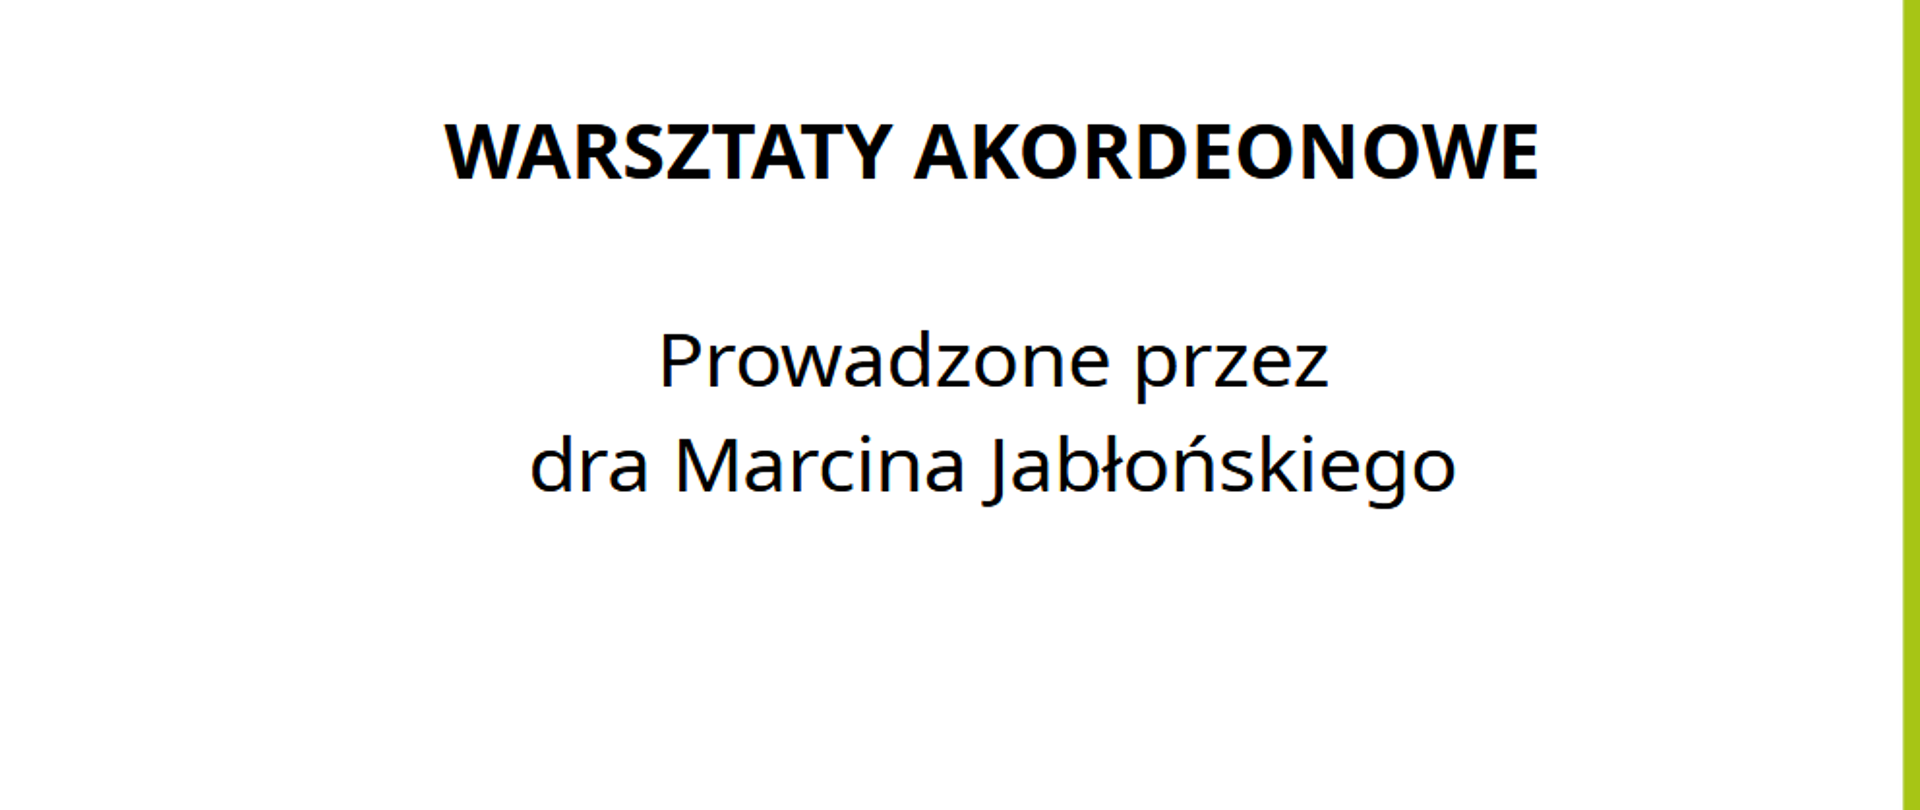 Zapraszamy na warsztaty akordeonowe prowadzone przez dra Marcina Jabłońskiego. 26.03.2024 r. Sala kameralna.